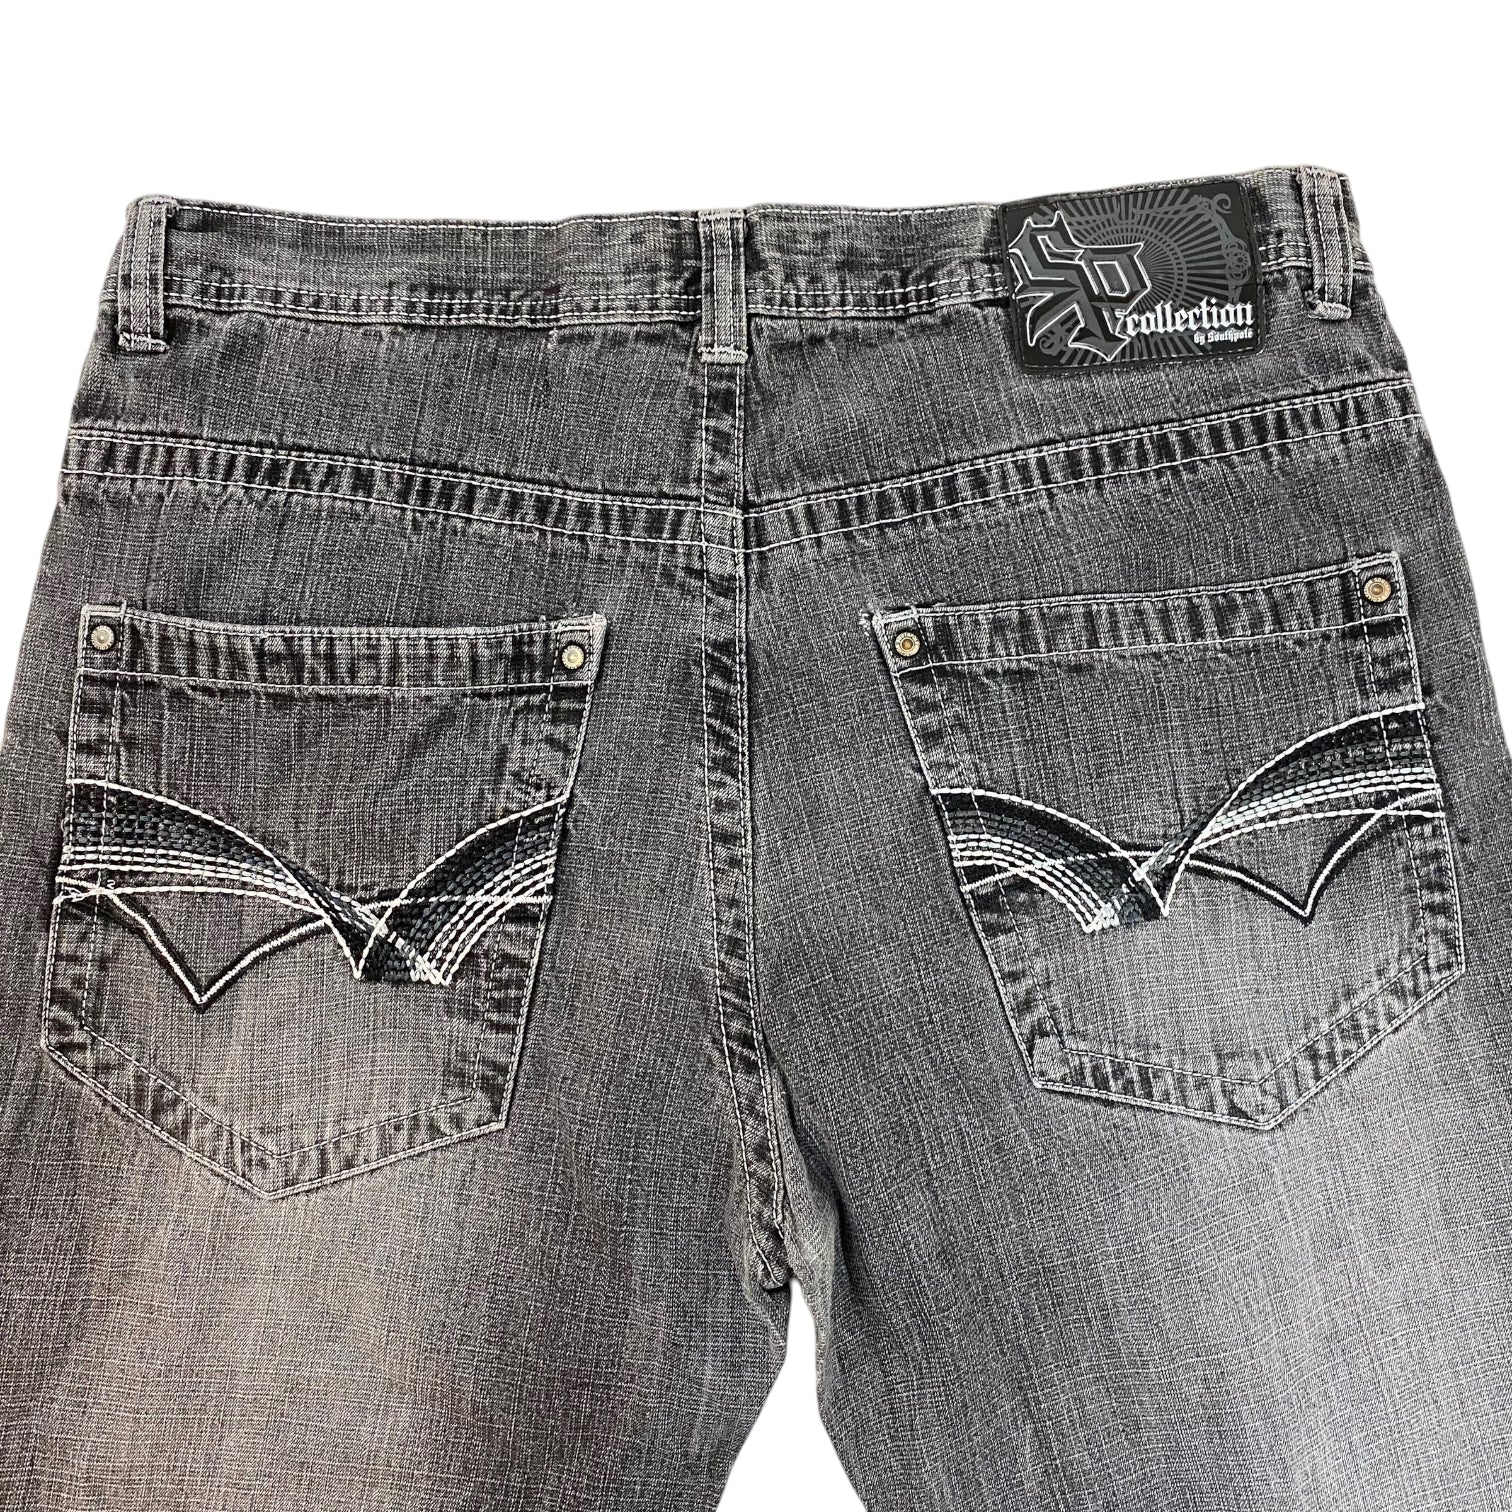 Y2K Hip Hop SP Collection South Pole Denim Jeans Black